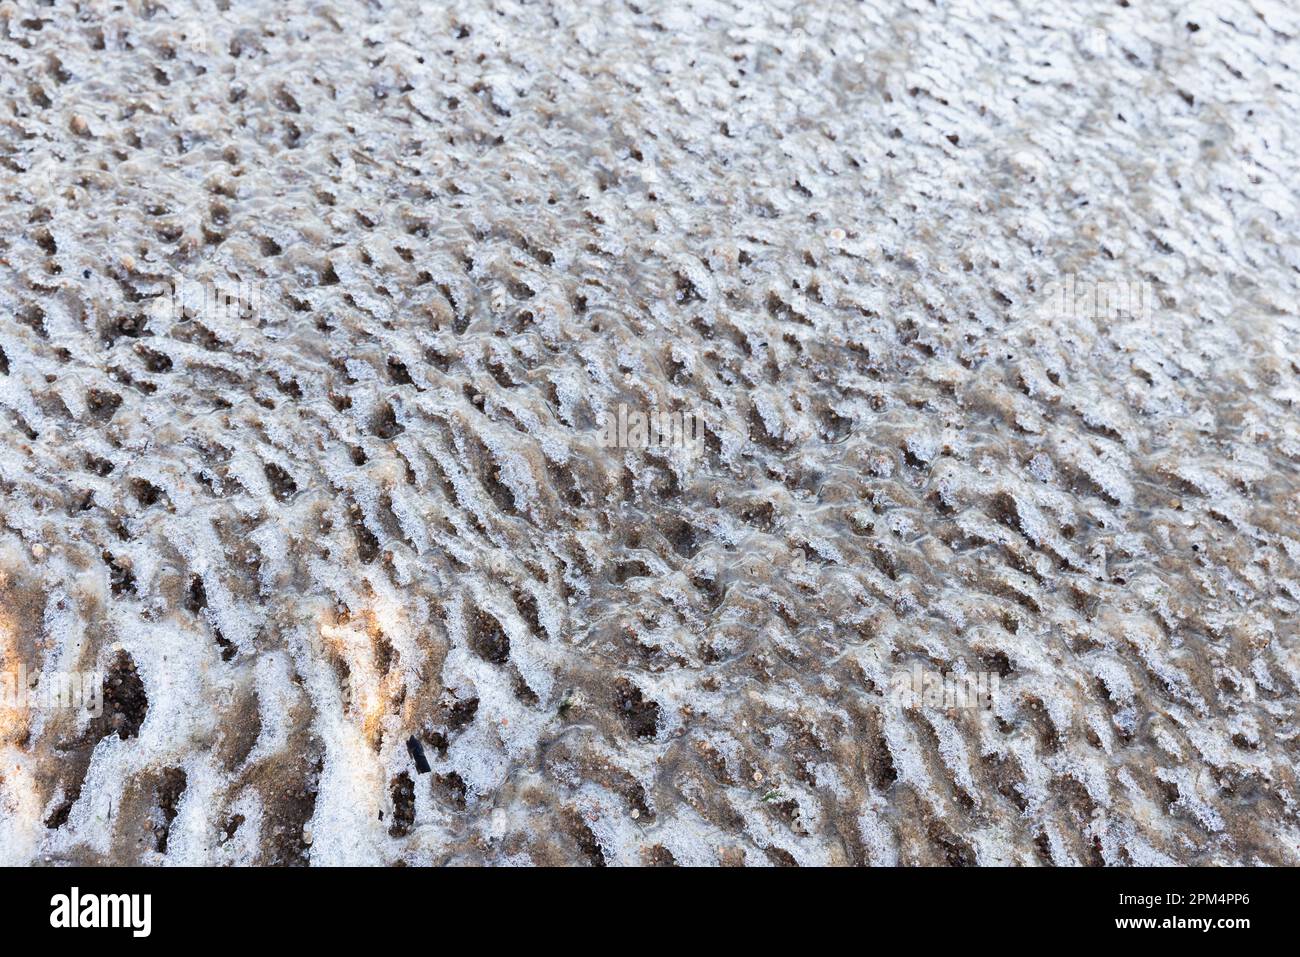 Il ghiaccio fondente gallina la superficie con la sabbia, la texture naturale della foto di fondo di inverno Foto Stock